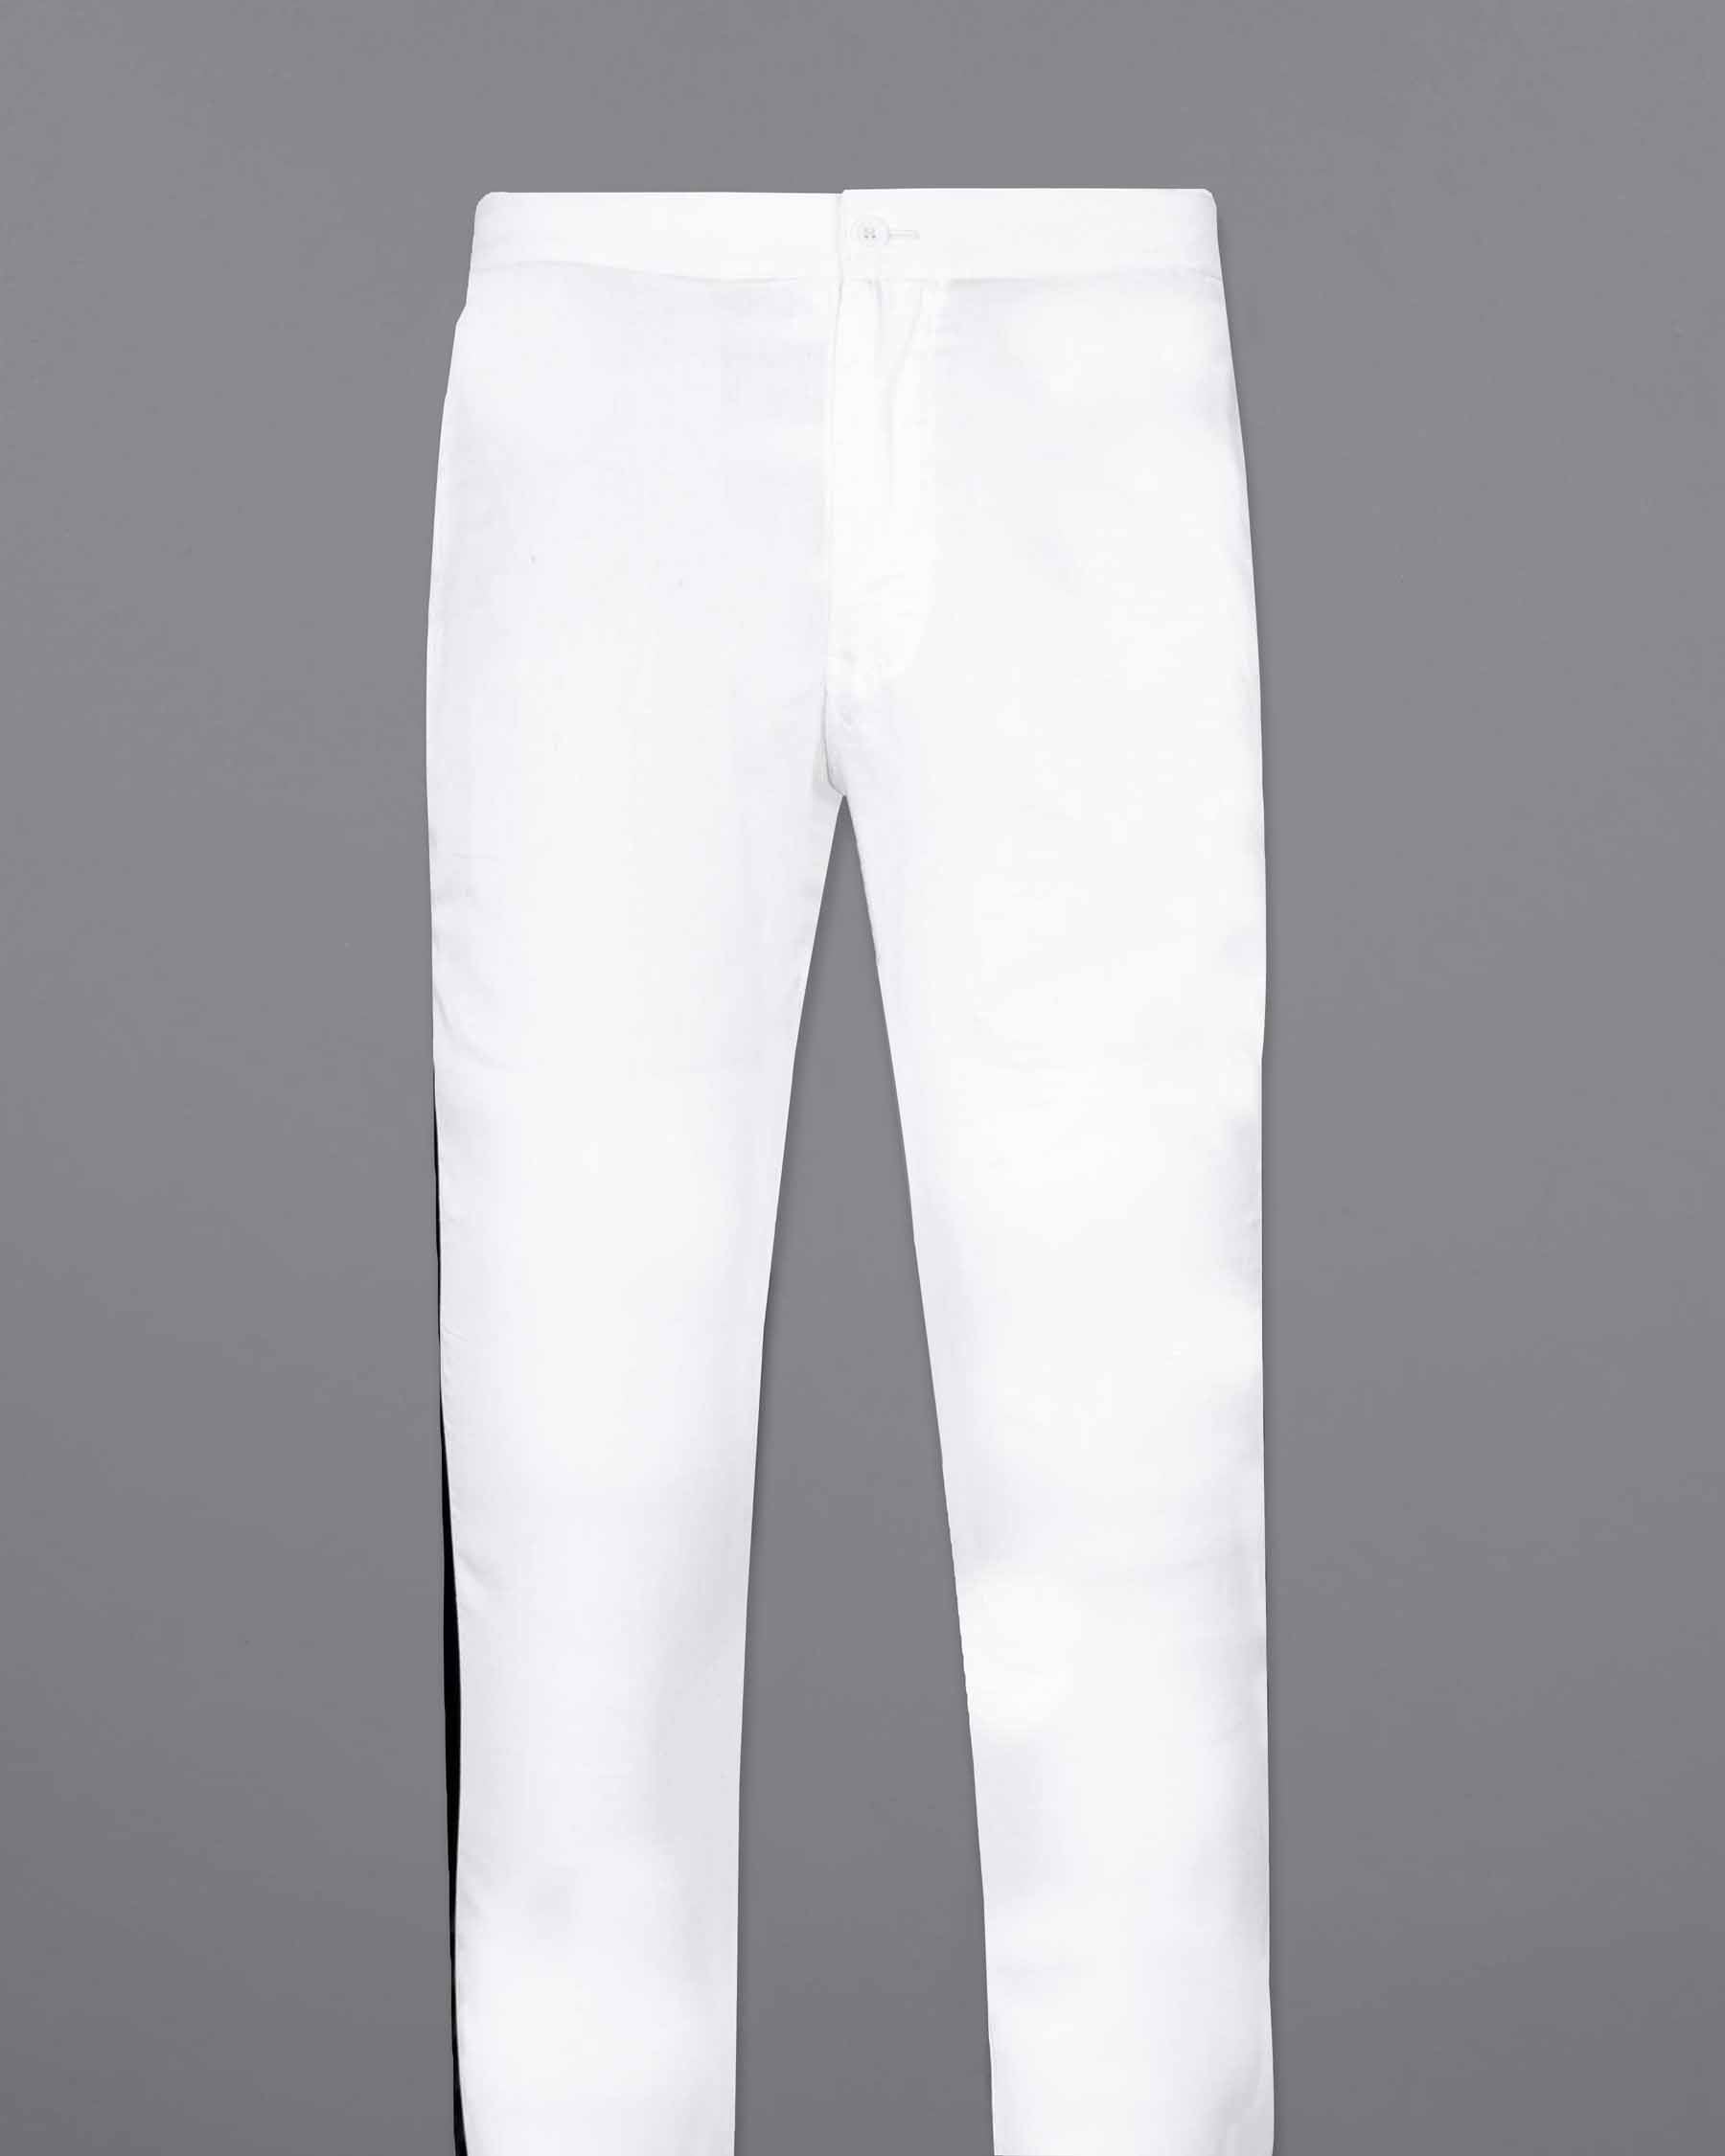 Jade Black And Bright White Super Soft Premium Cotton Designer Lounge Pant LP170-28, LP170-30, LP170-32, LP170-34, LP170-36, LP170-38, LP170-40, LP170-42, LP170-44